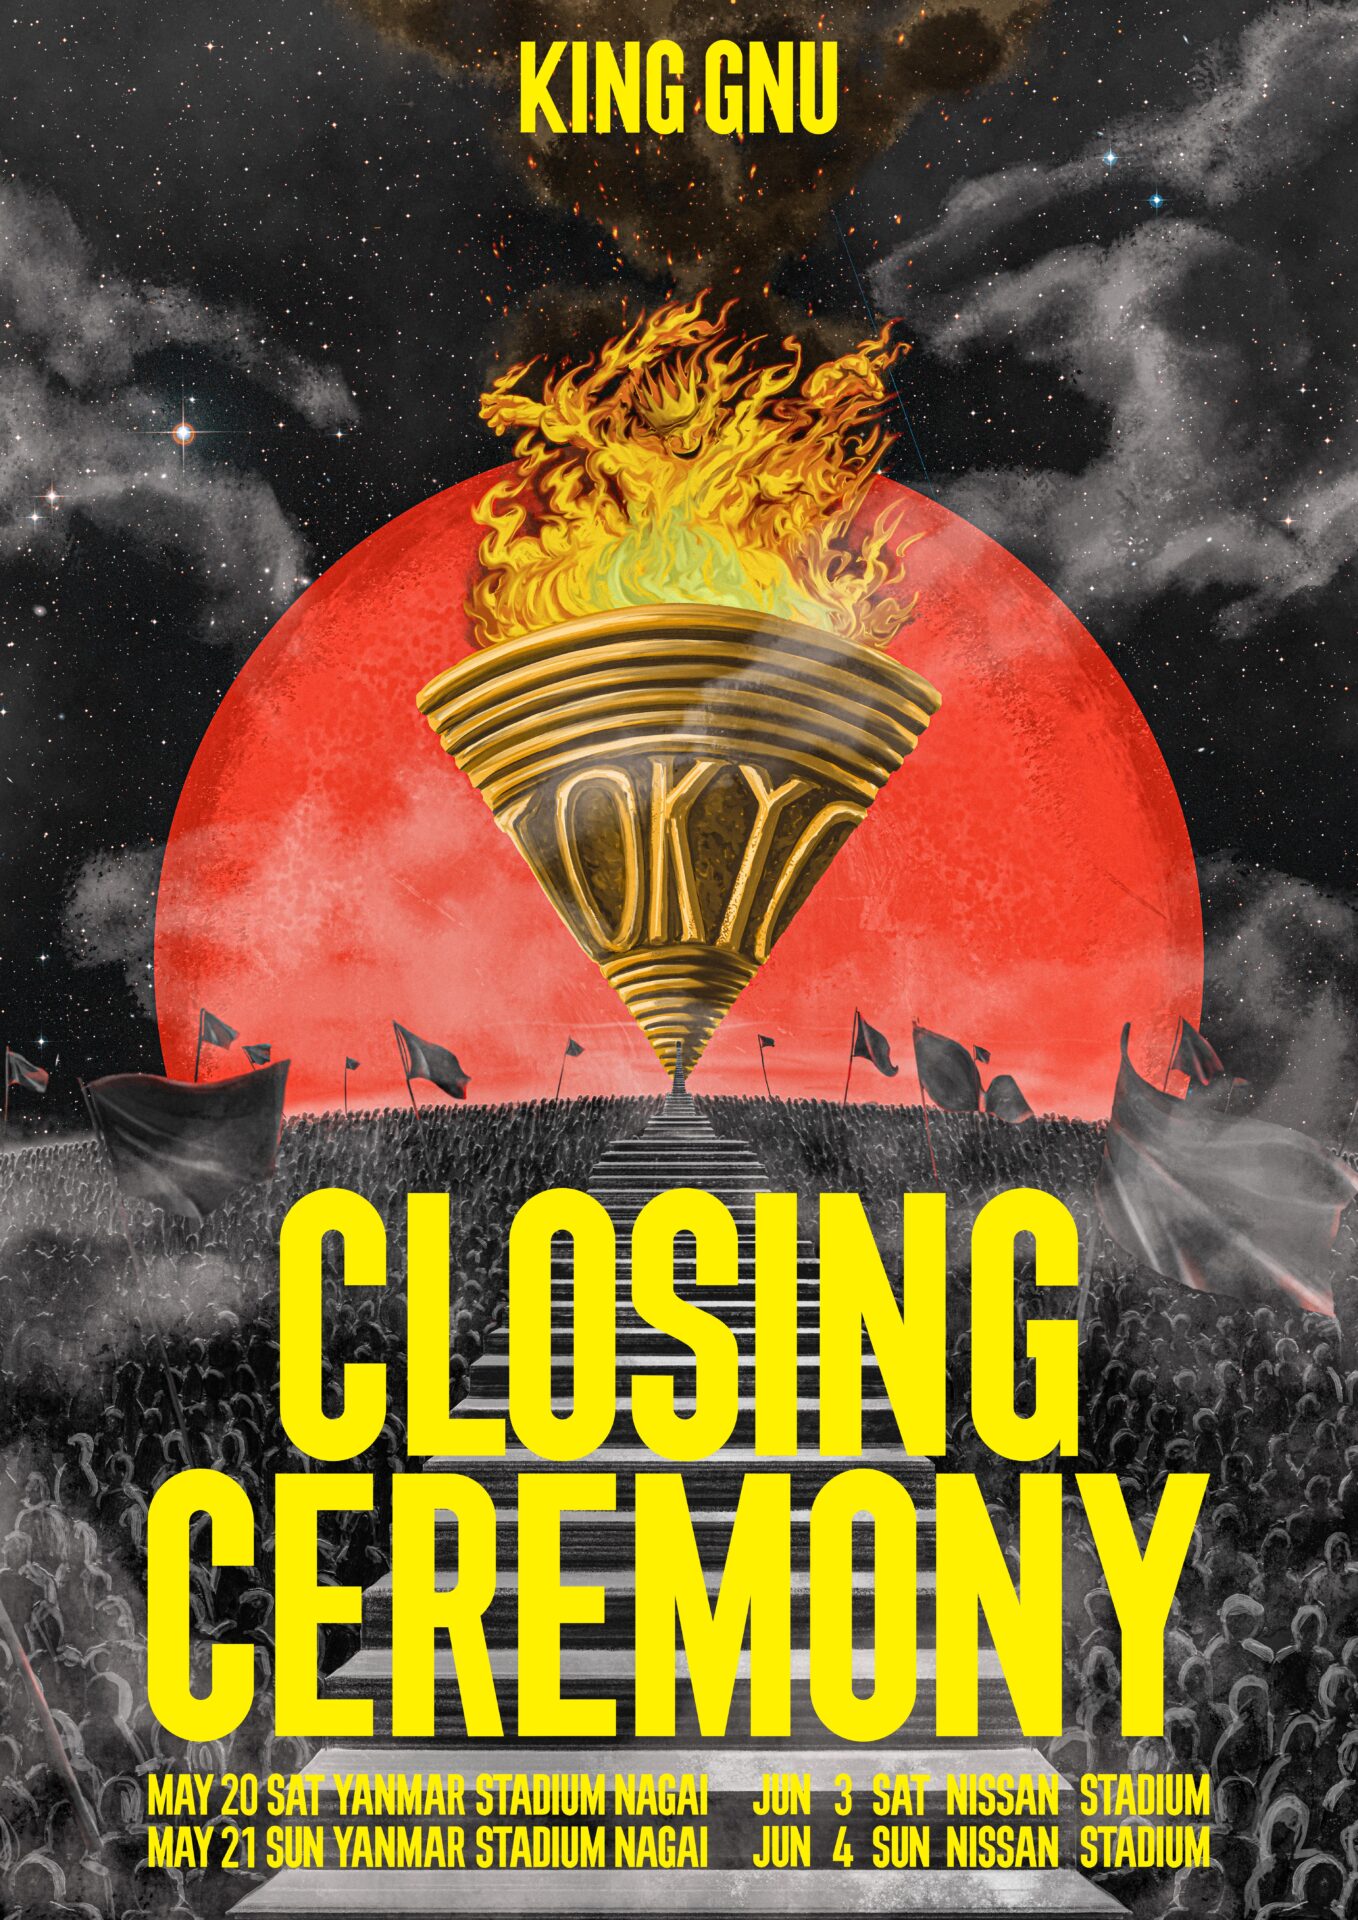 King Gnu Stadium Live Tour 2023 CLOSING CEREMONY